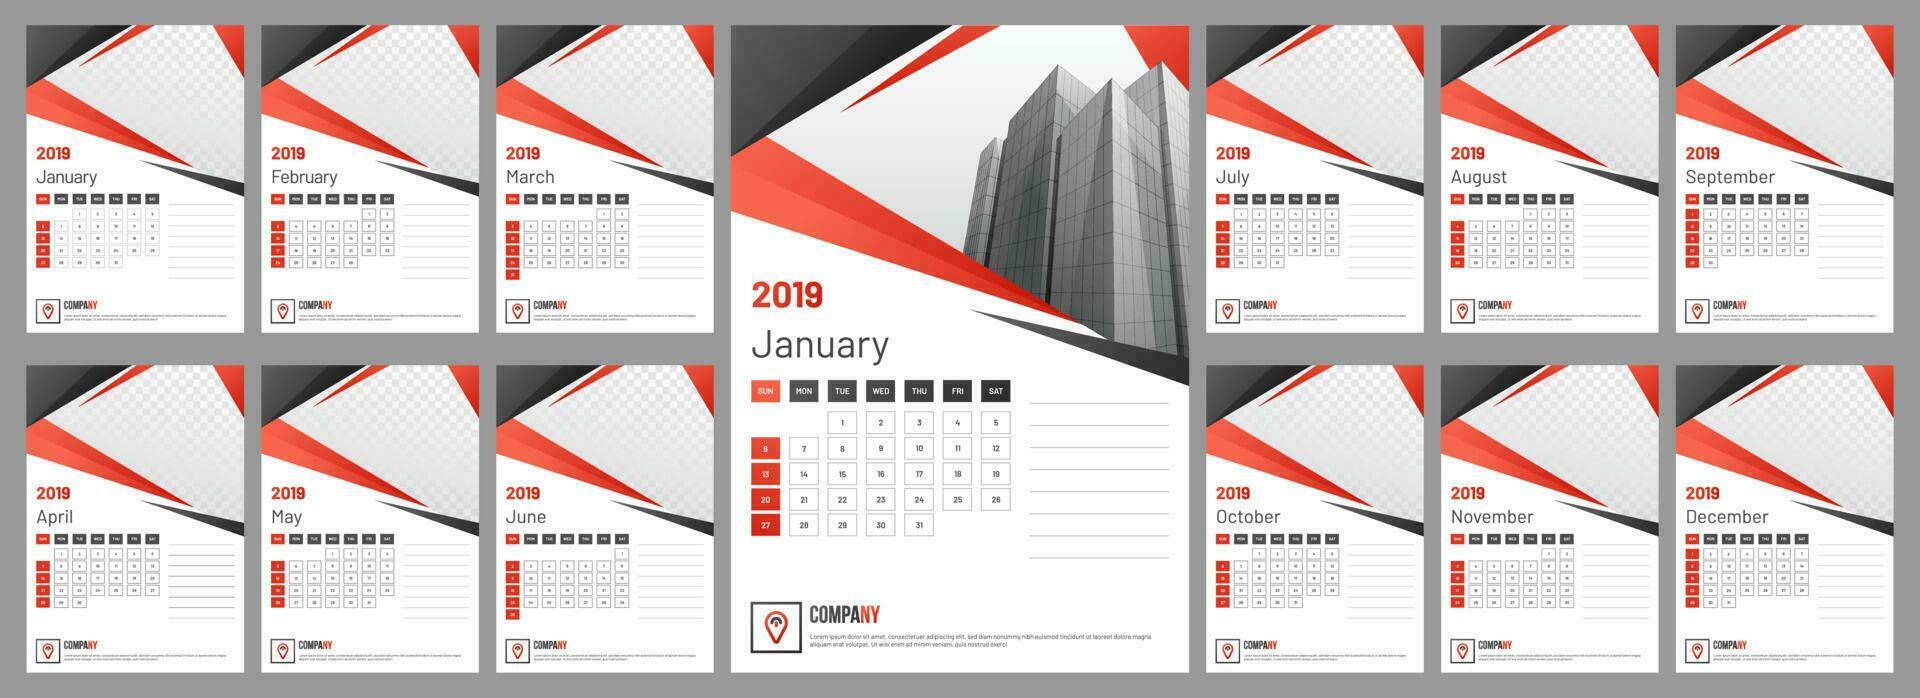 anual escritorio calendario diseño. vector